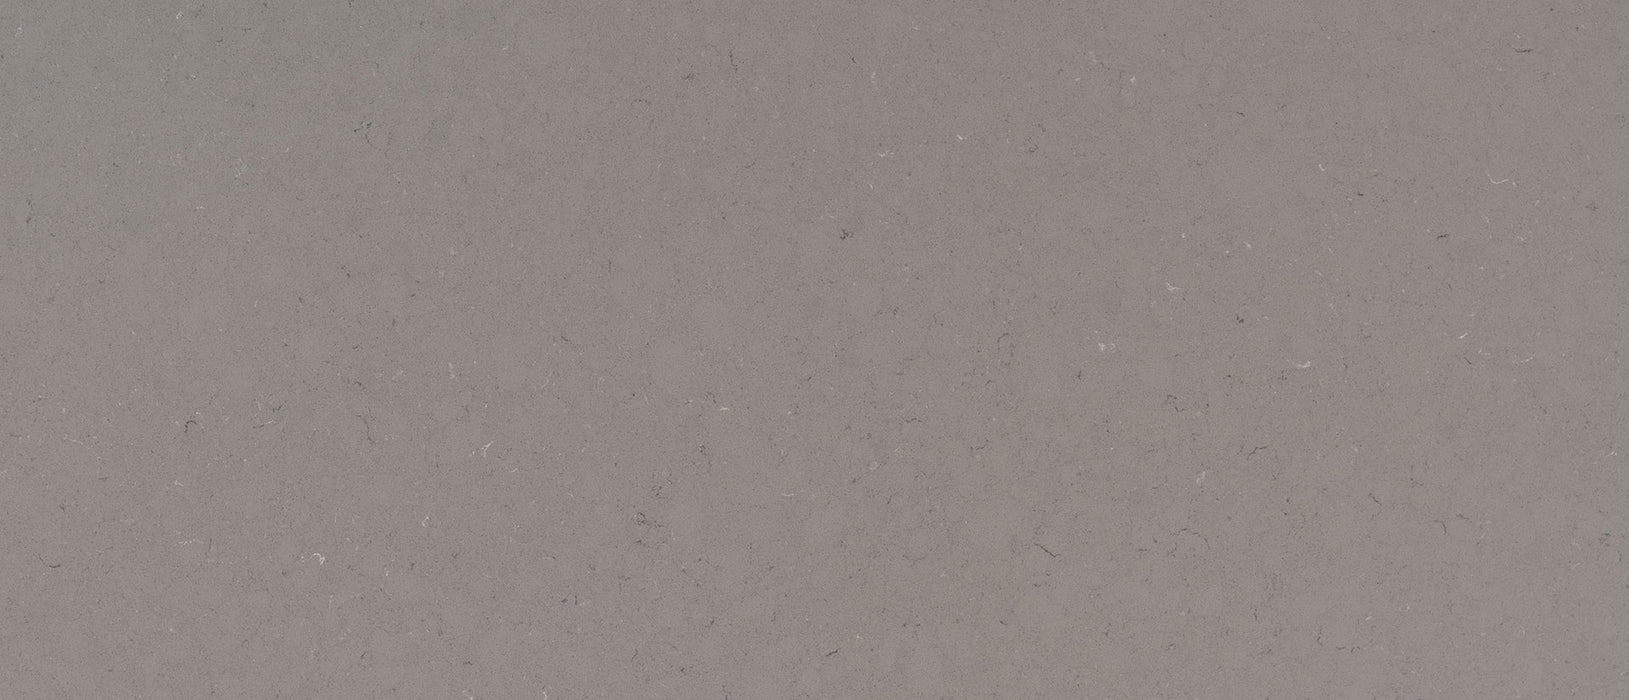 Fossil gray quartz countertop close up